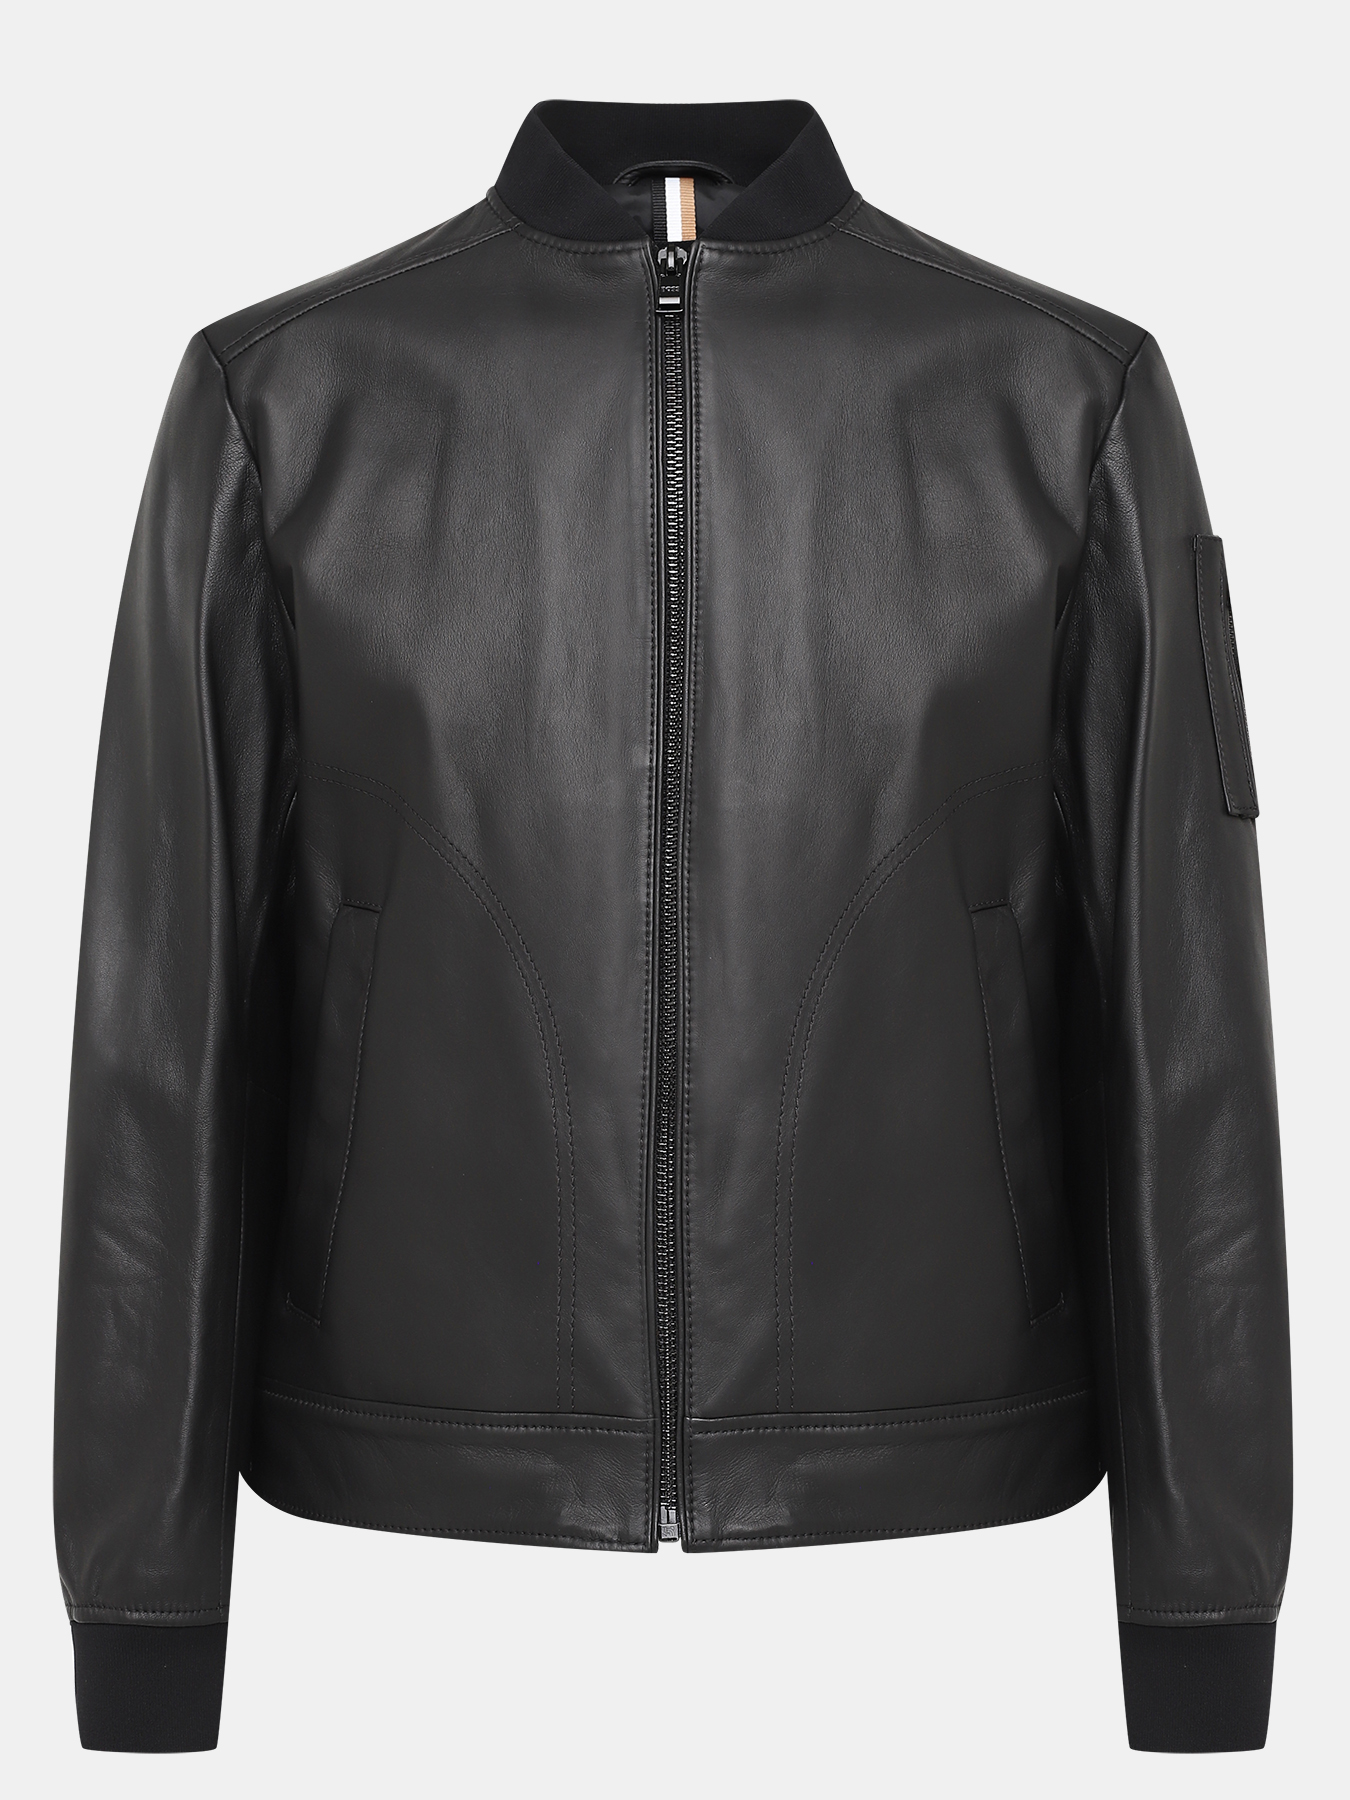 Кожаная куртка Malba BOSS 420438-026, цвет черный, размер 50